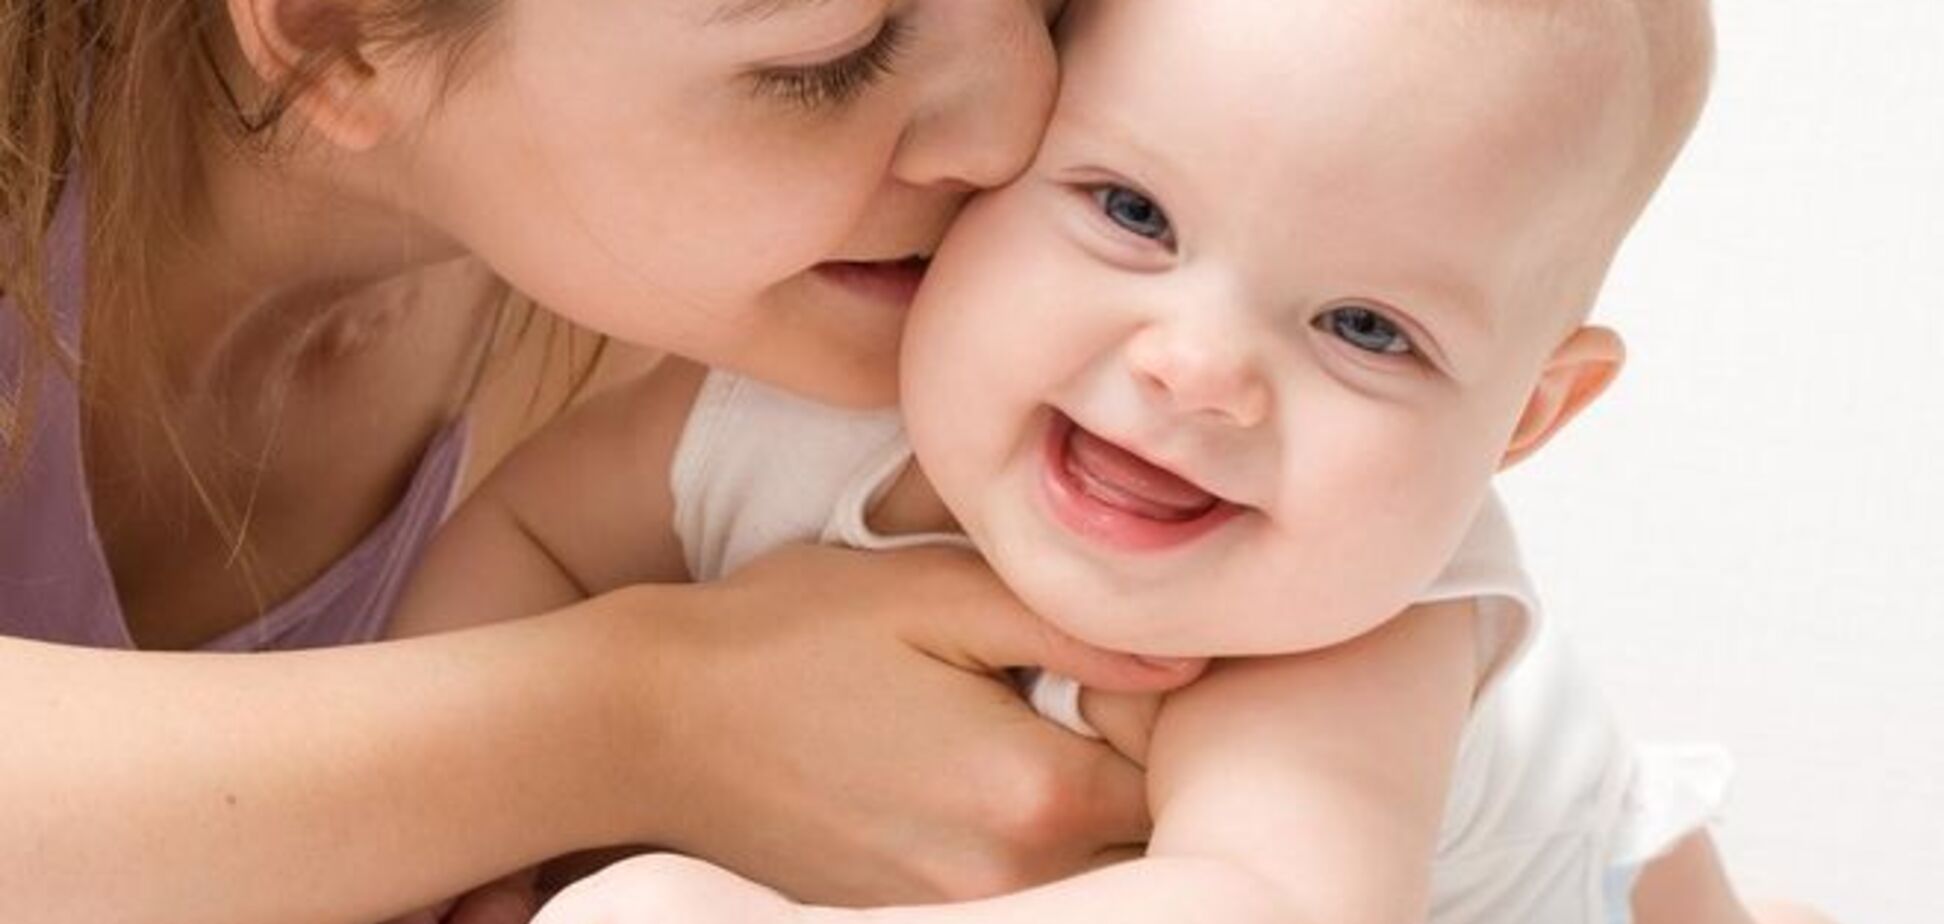 Биологи нашли гормон любви и заботы, отвечающий за материнство